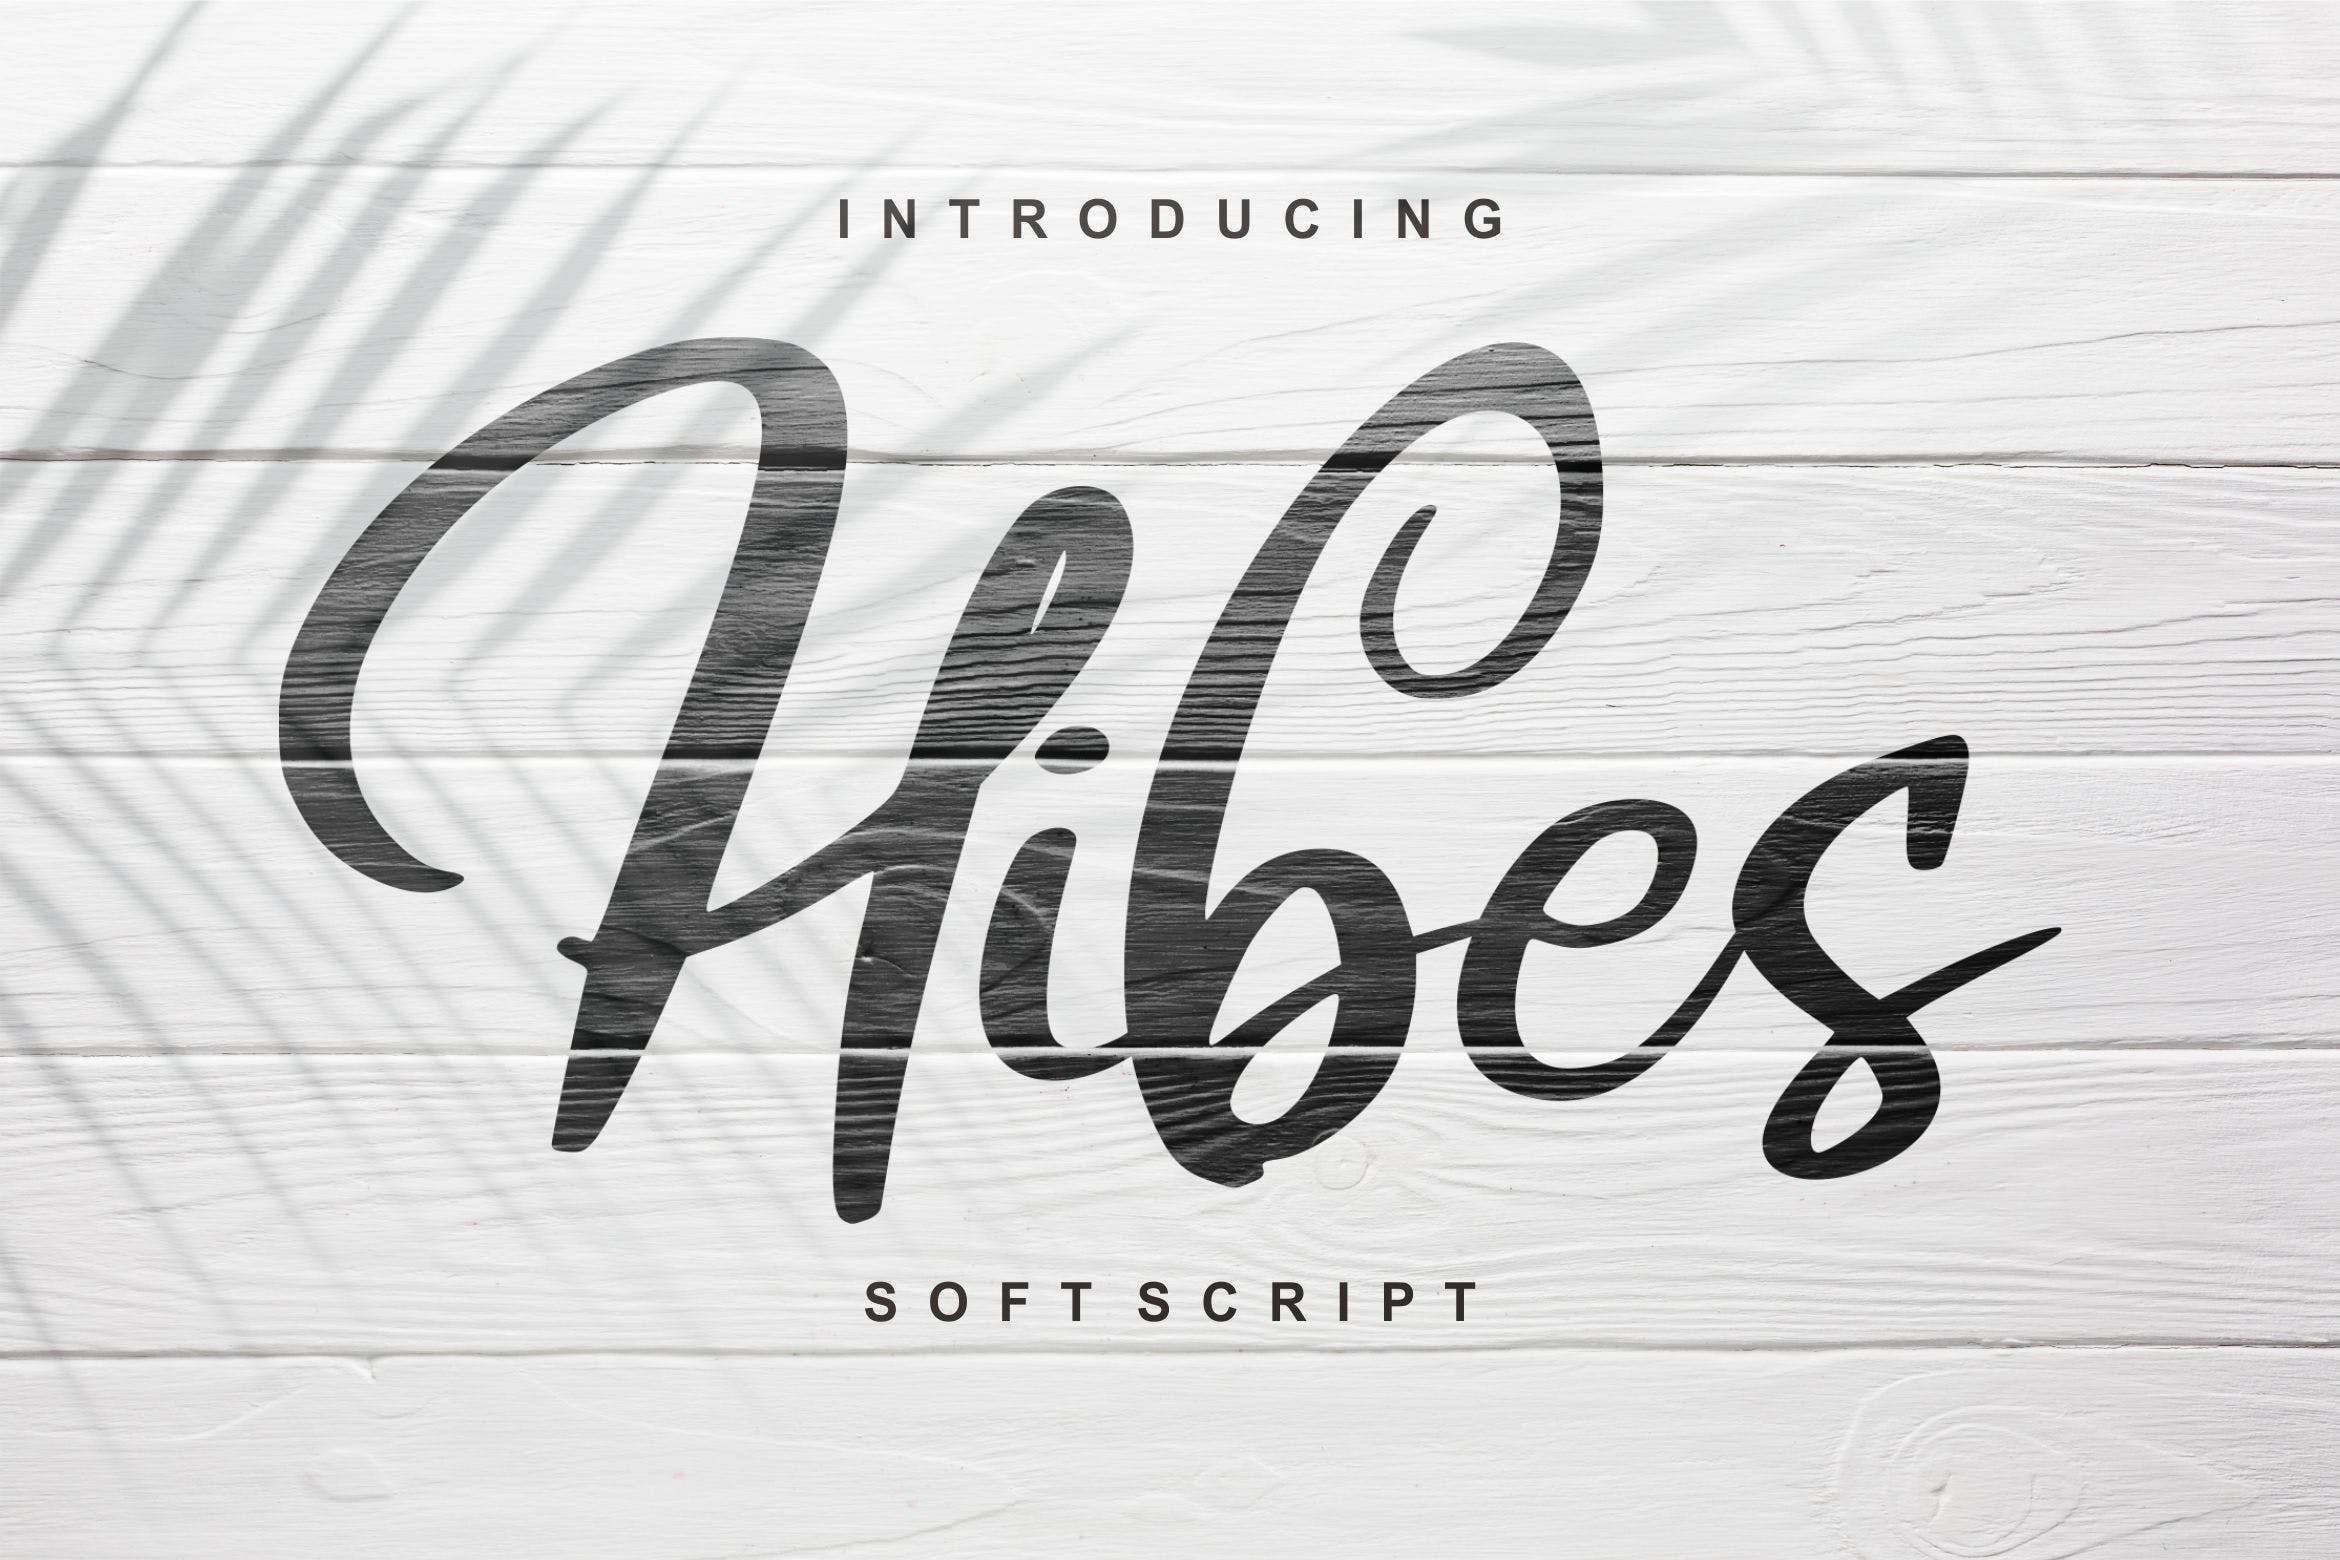 软笔刷书法风格英文手写字体16设计素材网精选 Hibes | Soft Script Font插图